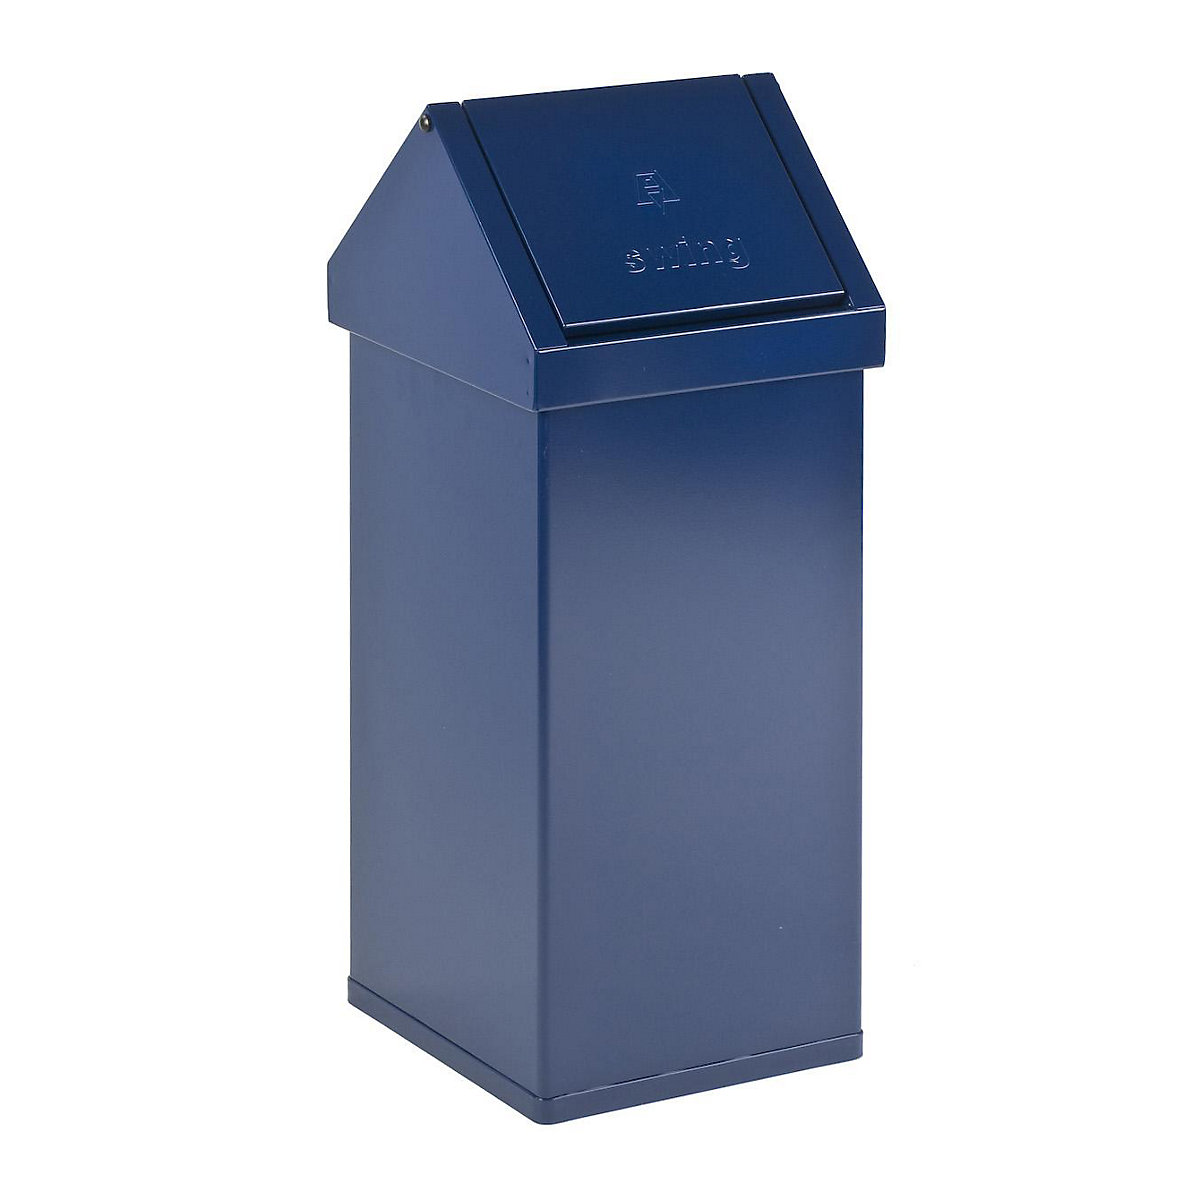 Posoda za odpadke z nihajnim pokrovom, prostornina 55 l, ŠxVxG 300 x 770 x 300 mm, aluminij, modre barve-2